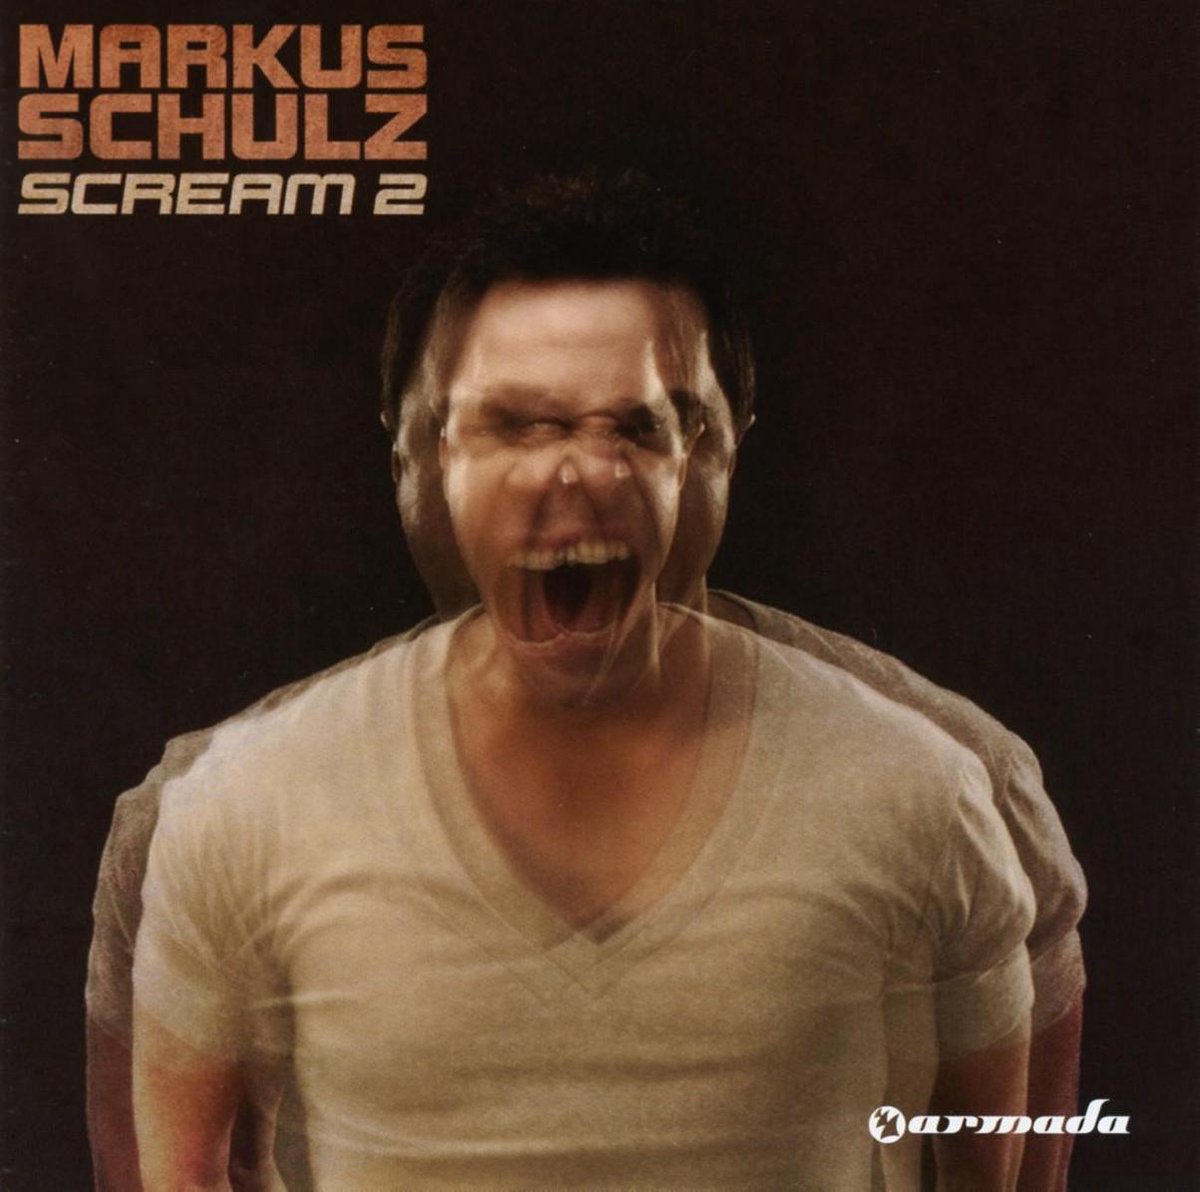 Scream 2 - Markus Schulz